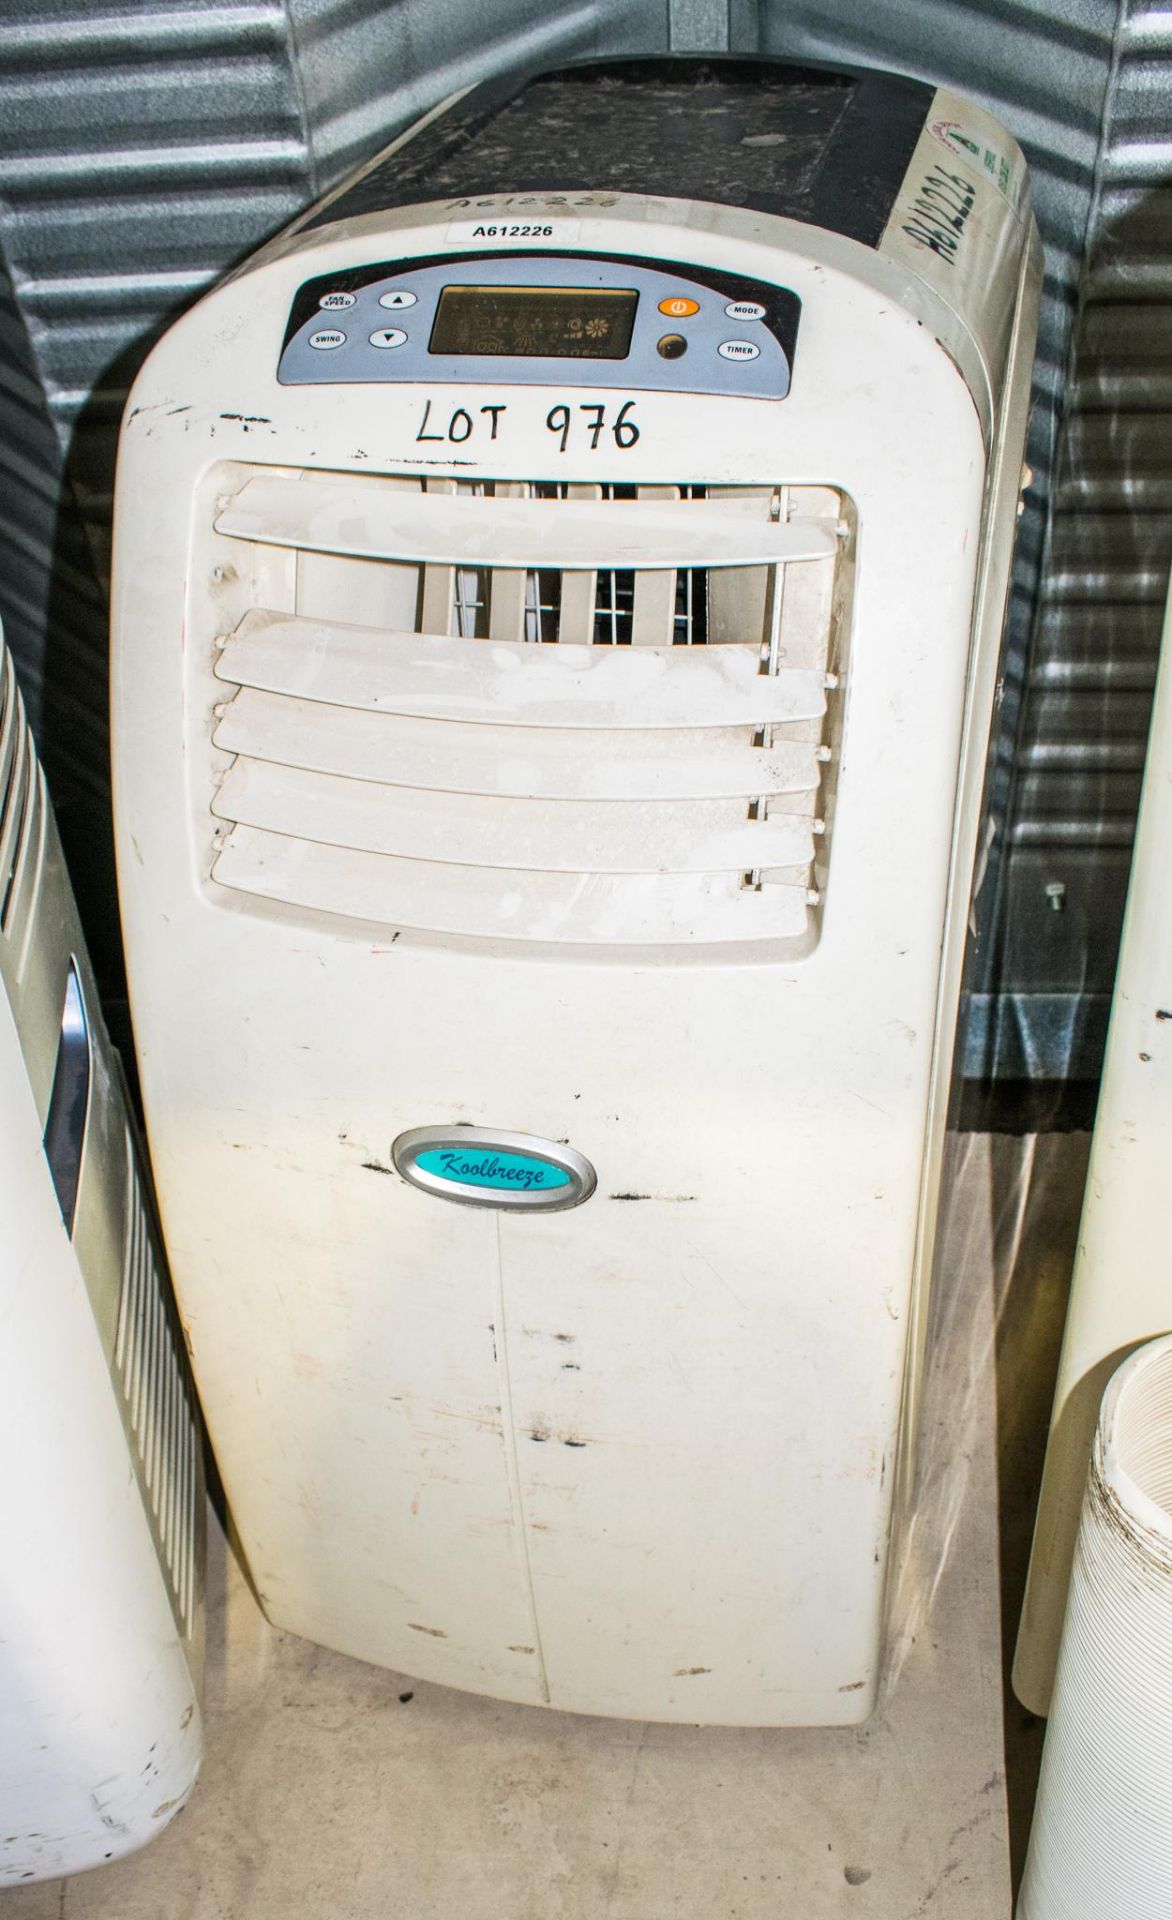 Koolbreeze 240v air conditioning unit A612226